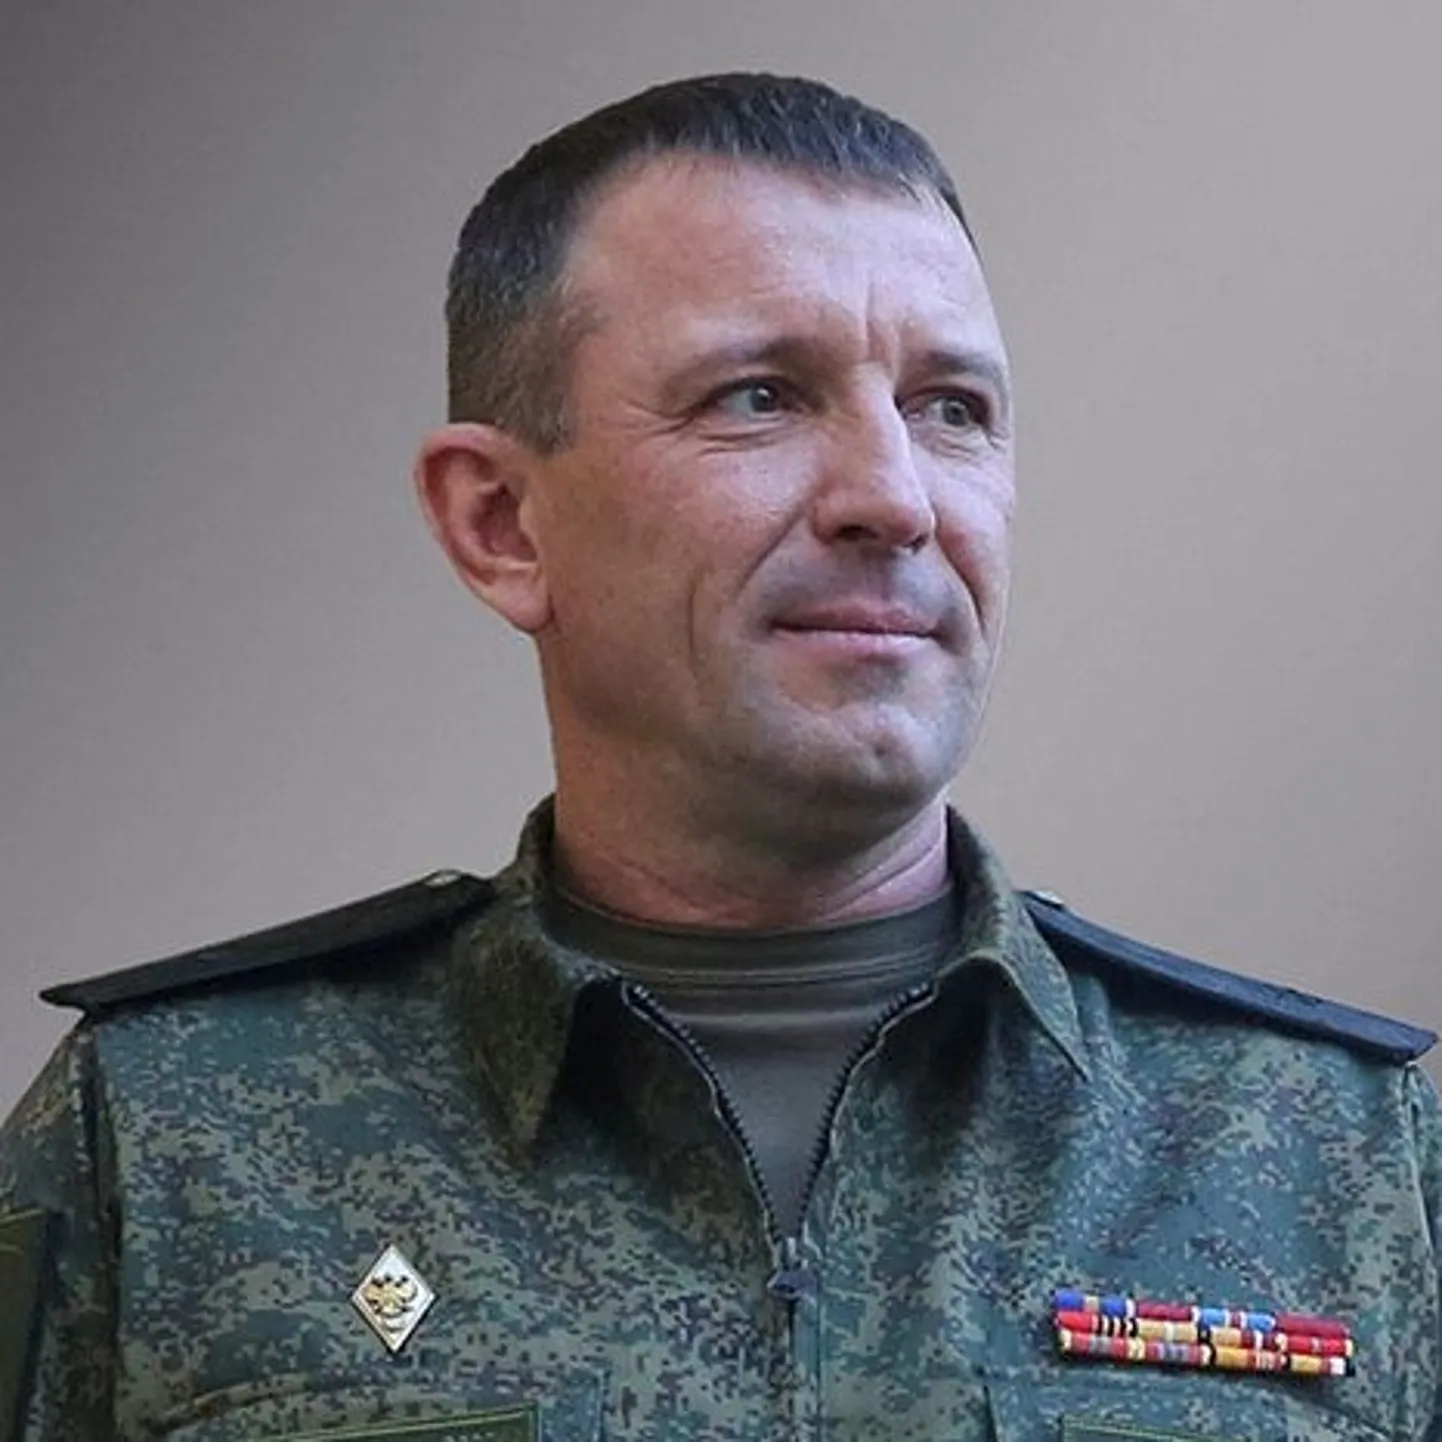 Командующий 58-й армией ВС России генерал-майор Иван Попов отказывается уходить с фронта после внезапного увольнения, заявляя, что российских солдат «ударил с тыла старший начальник».